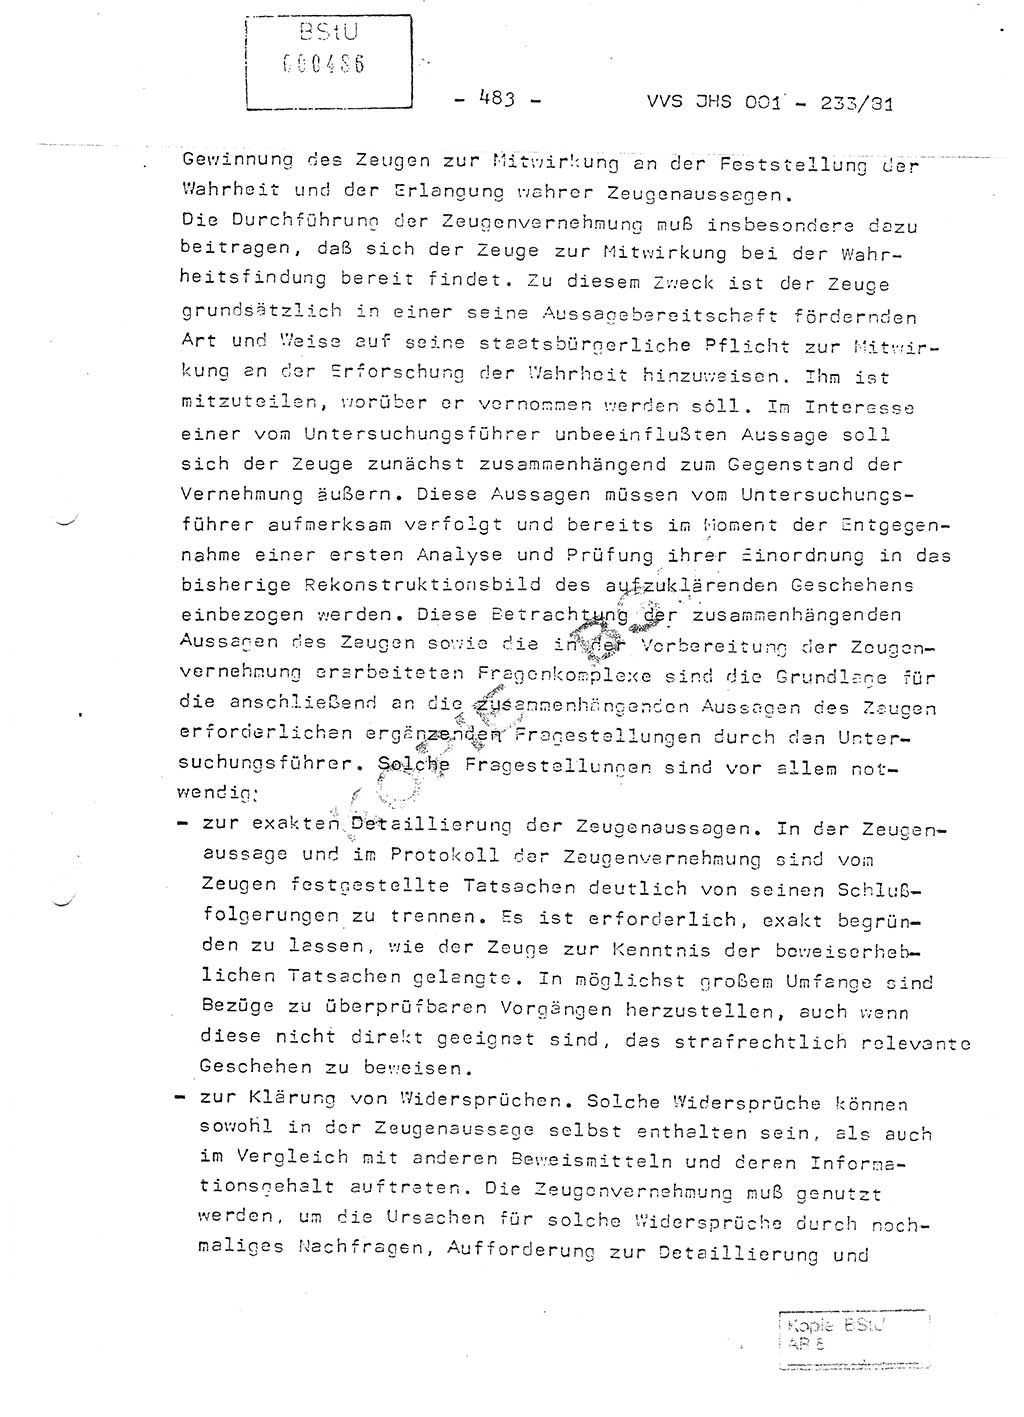 Dissertation Oberstleutnant Horst Zank (JHS), Oberstleutnant Dr. Karl-Heinz Knoblauch (JHS), Oberstleutnant Gustav-Adolf Kowalewski (HA Ⅸ), Oberstleutnant Wolfgang Plötner (HA Ⅸ), Ministerium für Staatssicherheit (MfS) [Deutsche Demokratische Republik (DDR)], Juristische Hochschule (JHS), Vertrauliche Verschlußsache (VVS) o001-233/81, Potsdam 1981, Blatt 483 (Diss. MfS DDR JHS VVS o001-233/81 1981, Bl. 483)